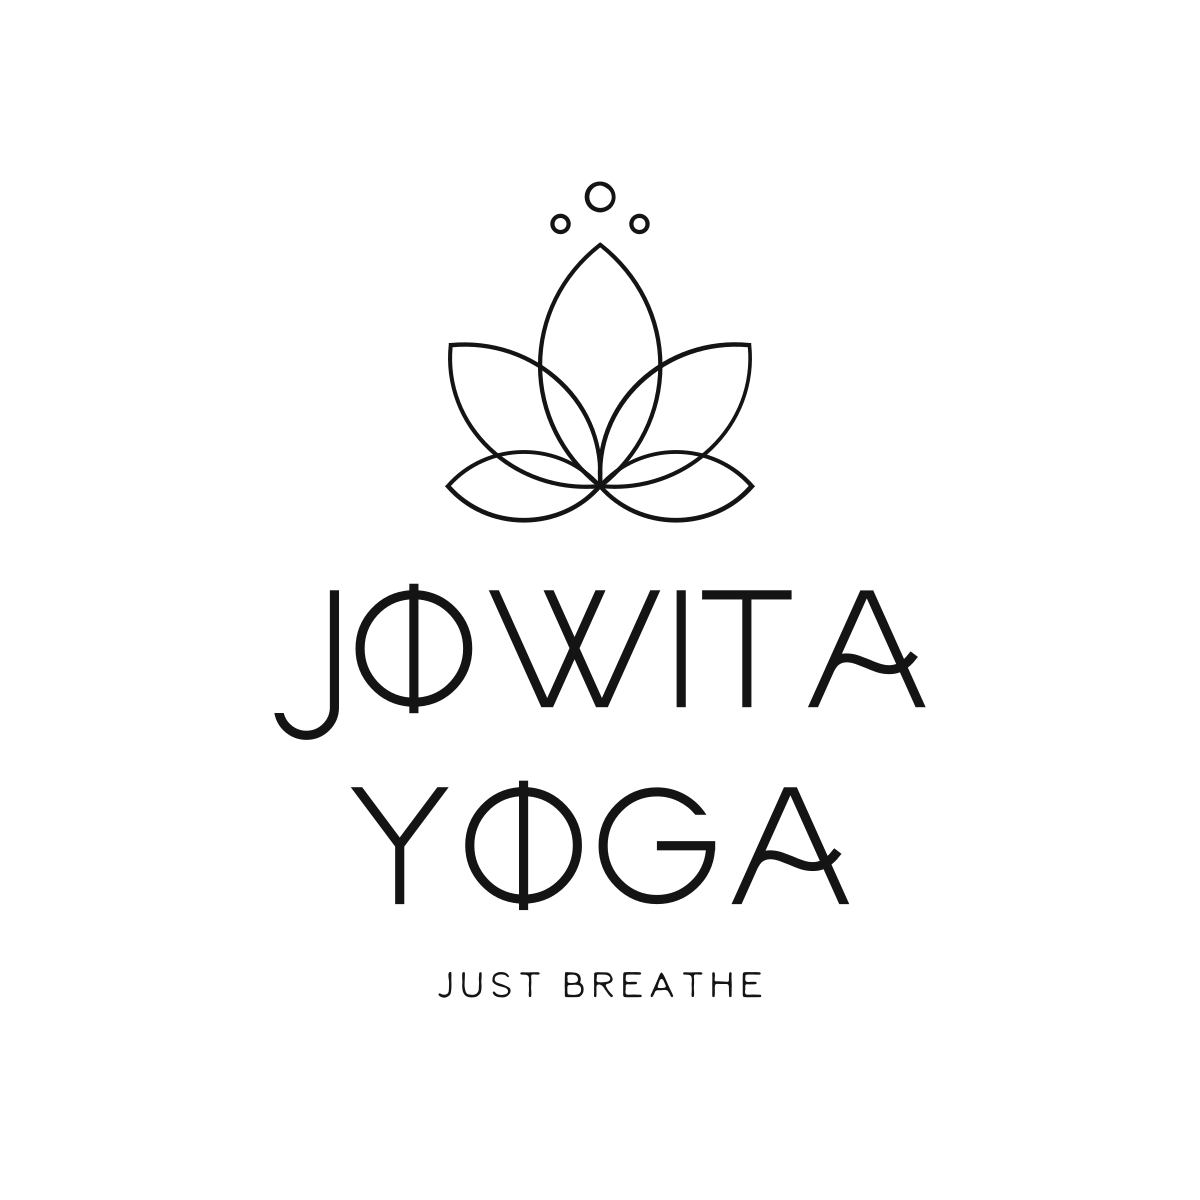 Jowita Yoga logo